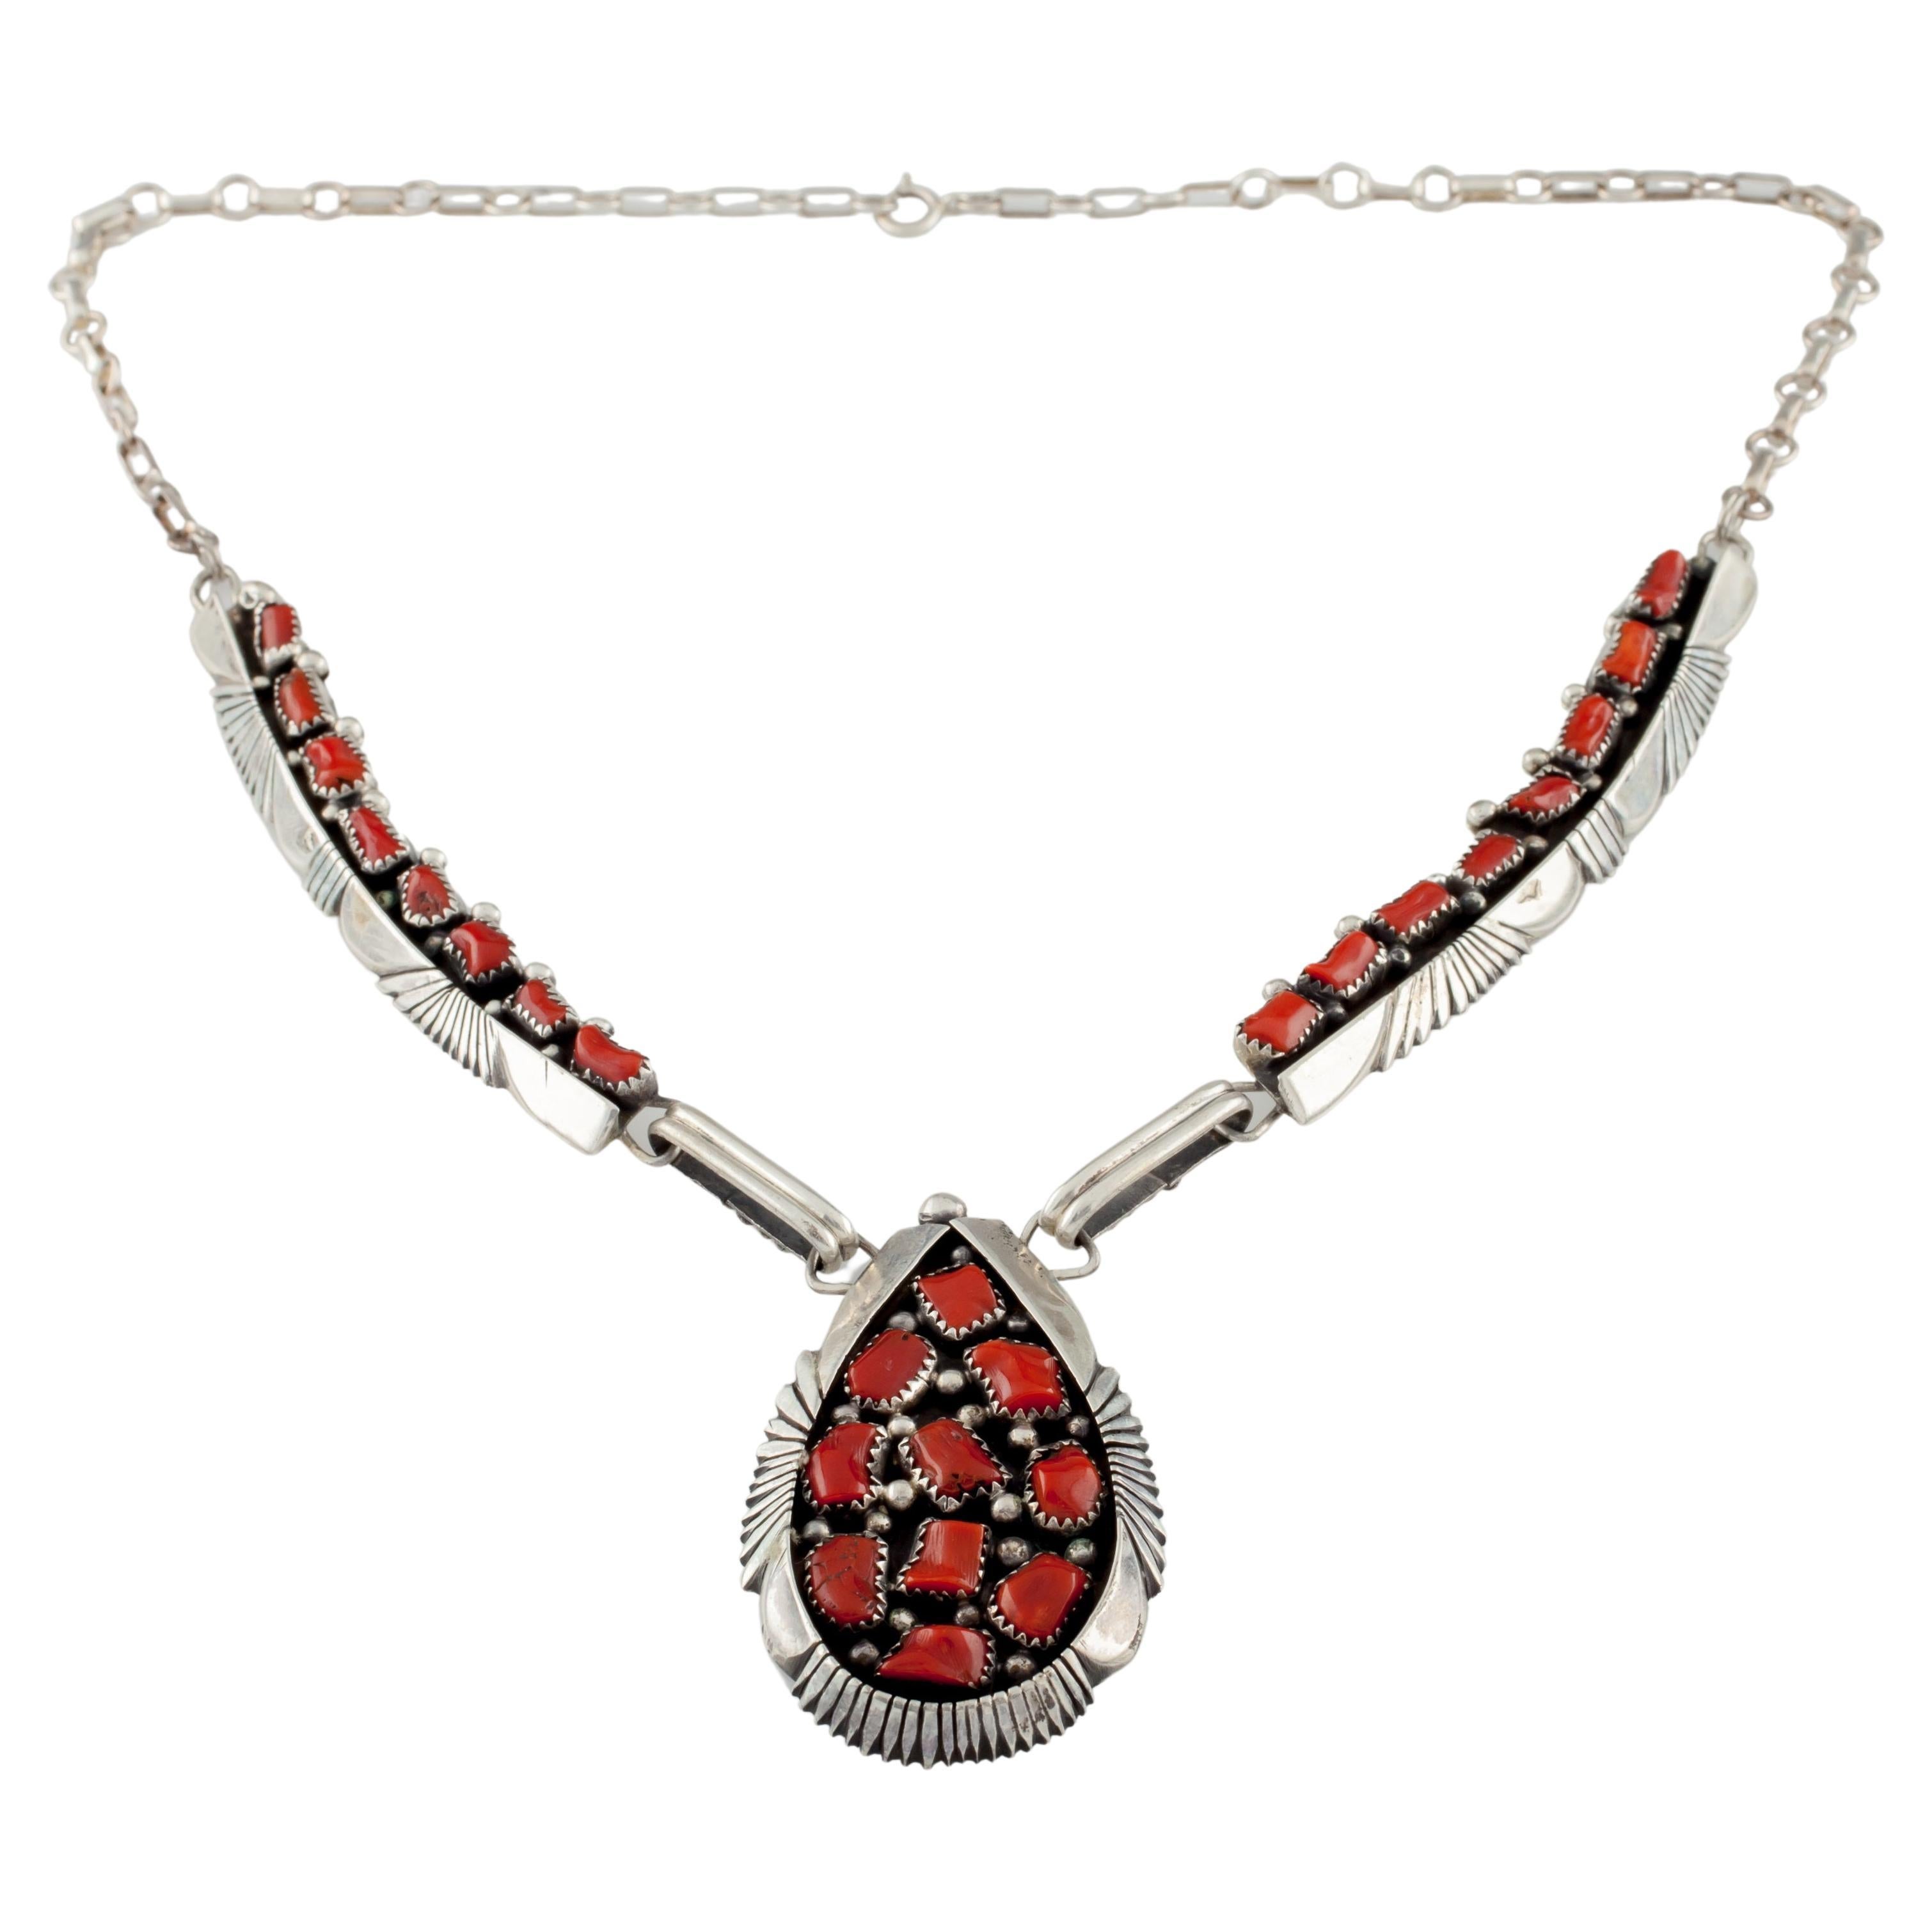 Benjamin Piaso Navajo Sterling Silver & Coral Necklace